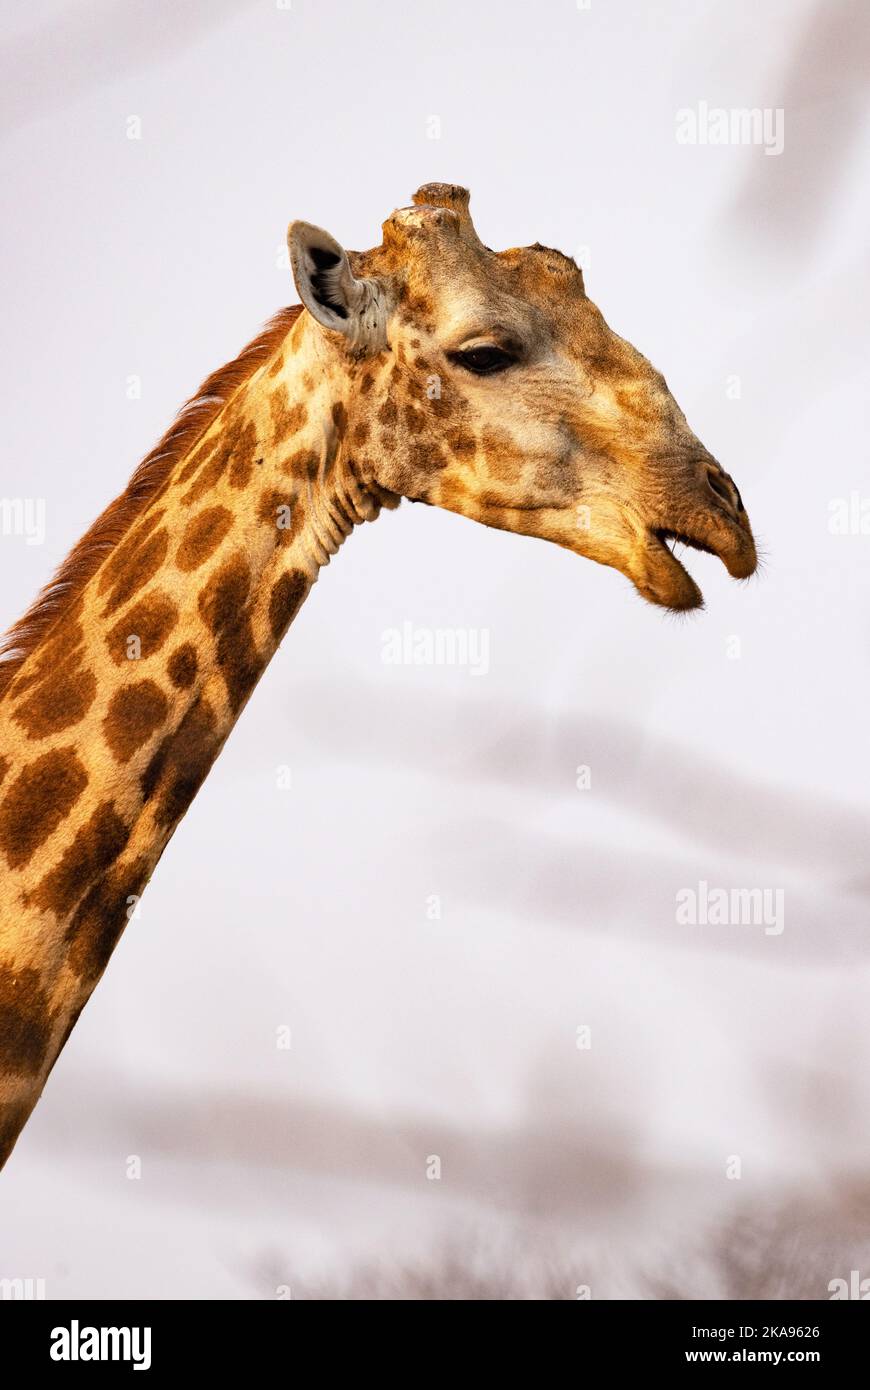 Giraffa meridionale, giraffa giraffa, ritratto di testa e collo, un animale adulto, Moremi Game Reserve, Okavango Delta, Botswana Africa. Fauna selvatica africana. Foto Stock